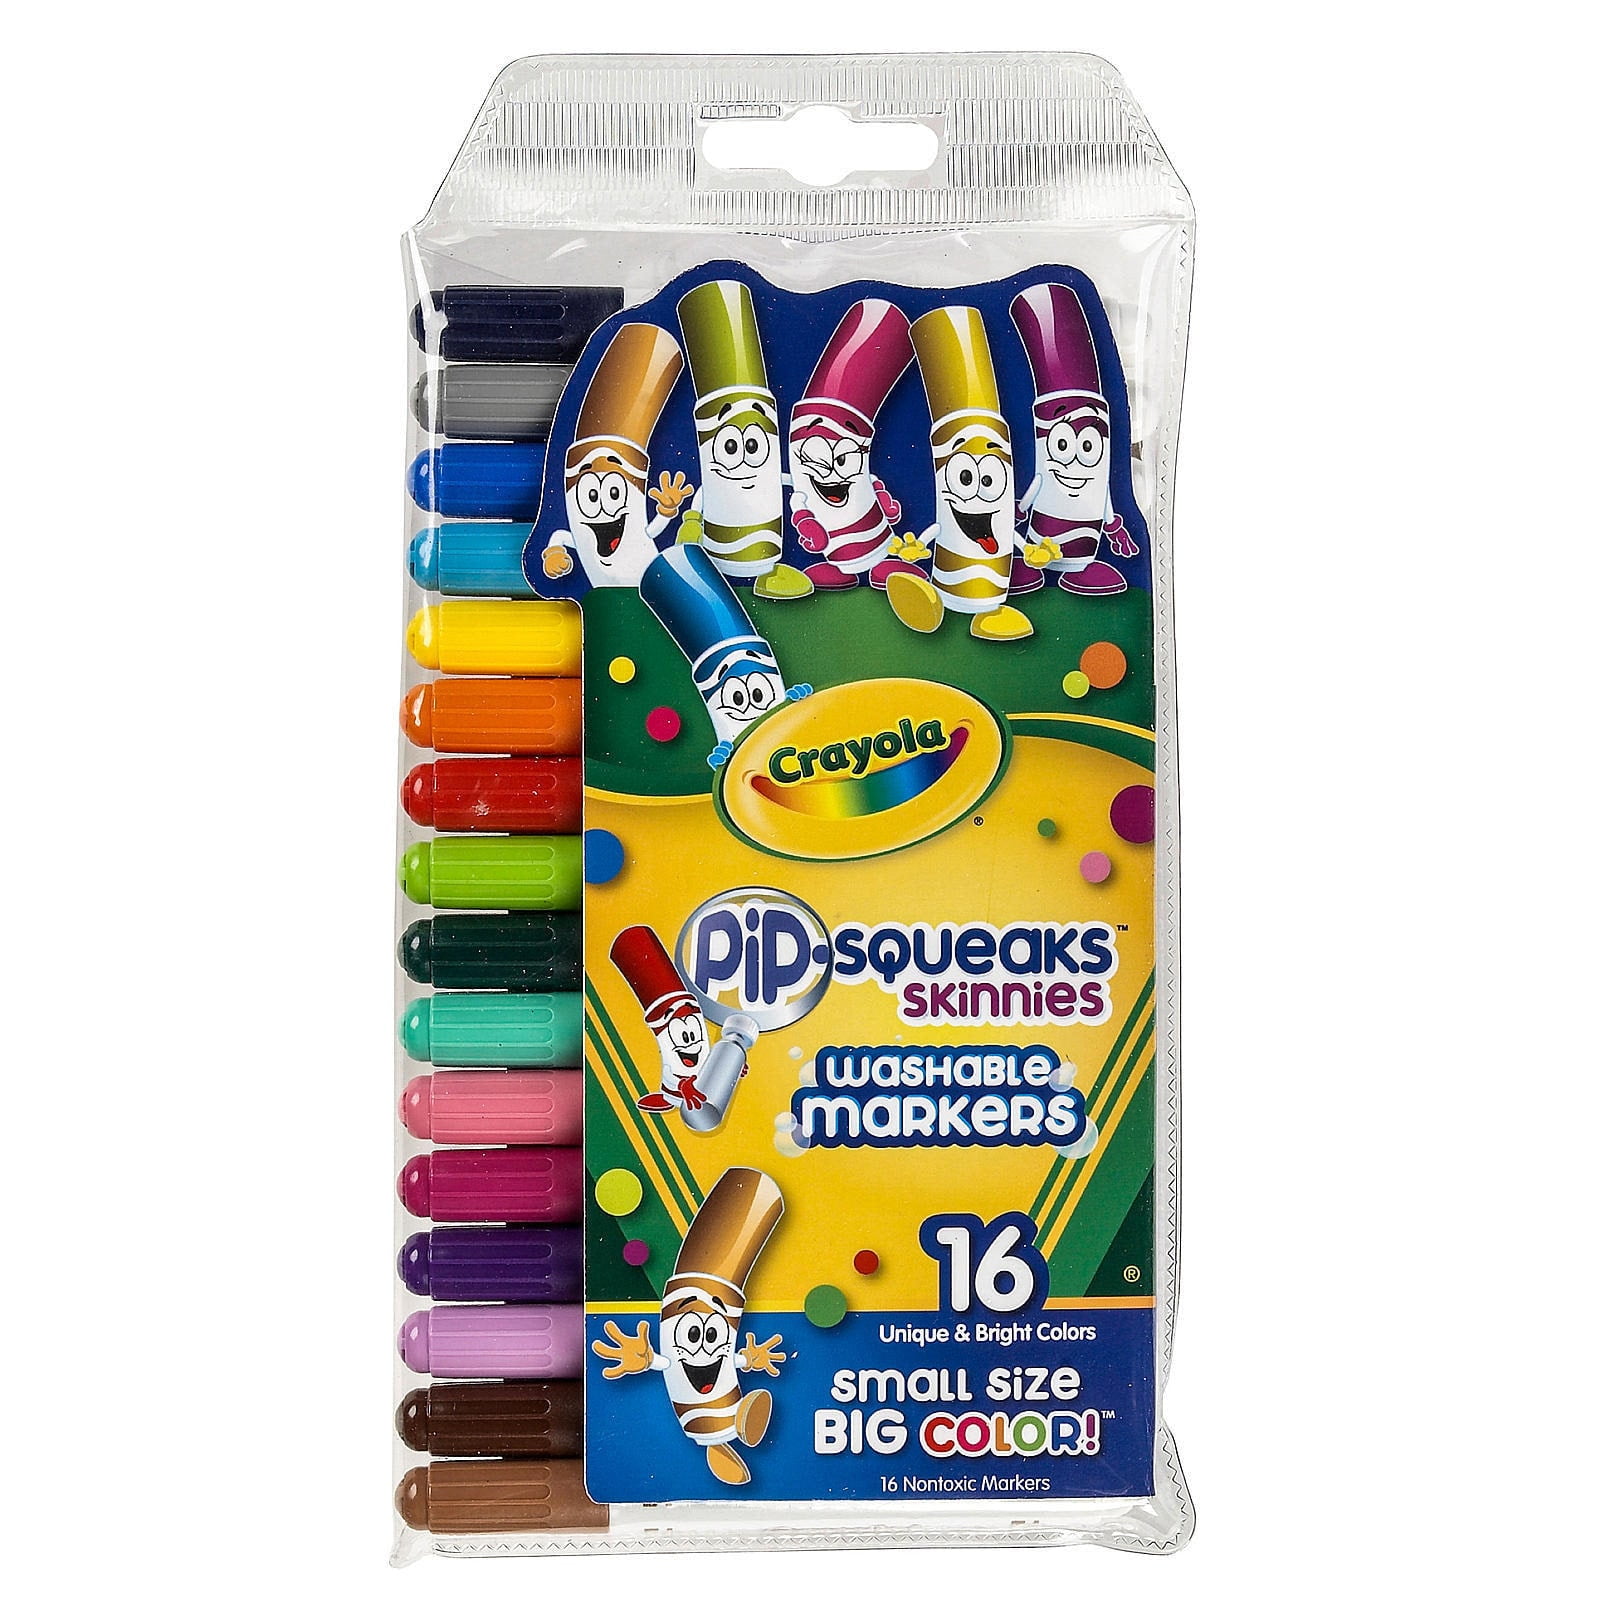 Shop Crayola Pip Squeak online